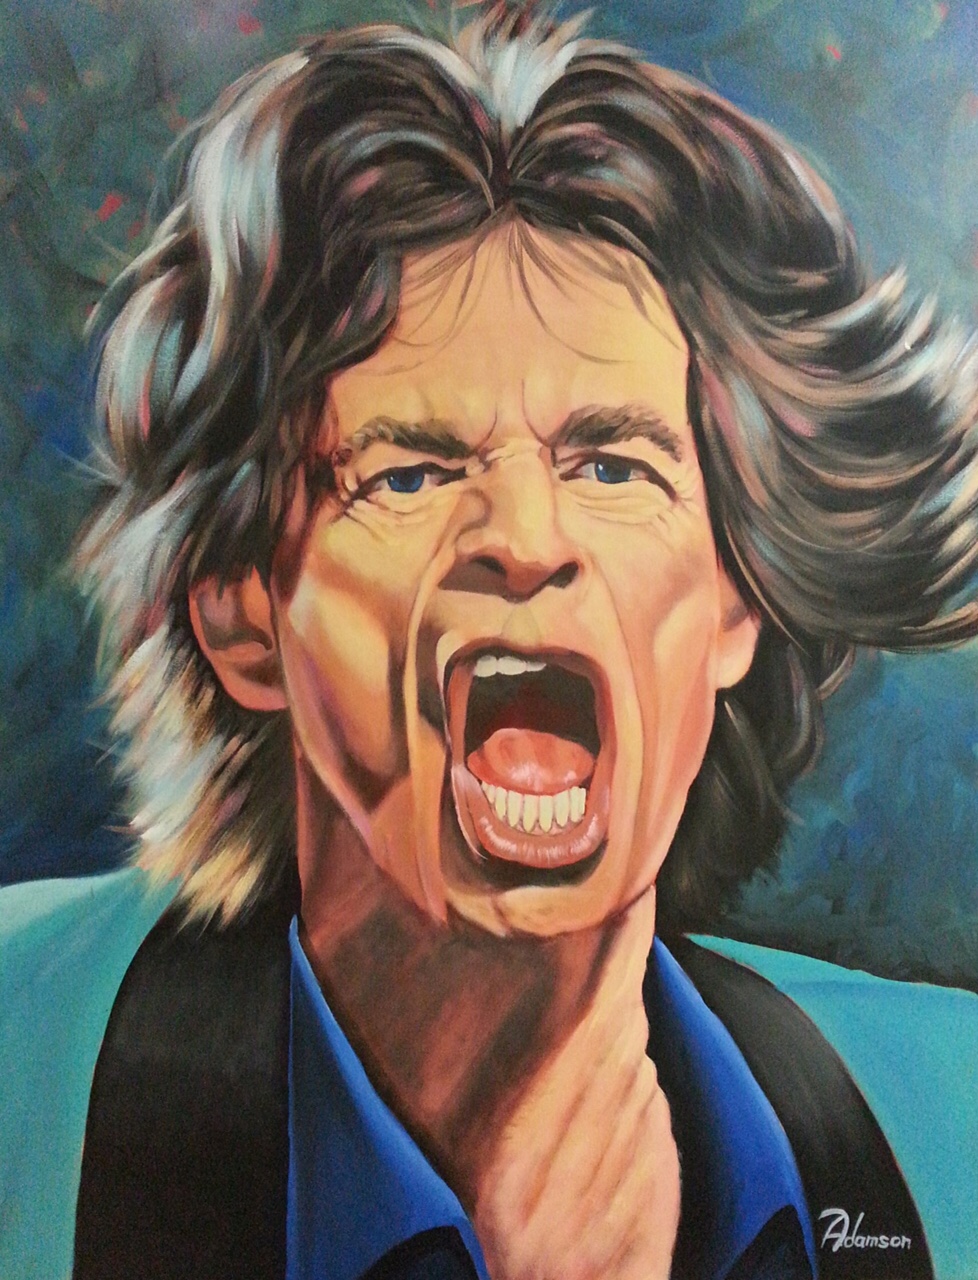 Mick Jagger2